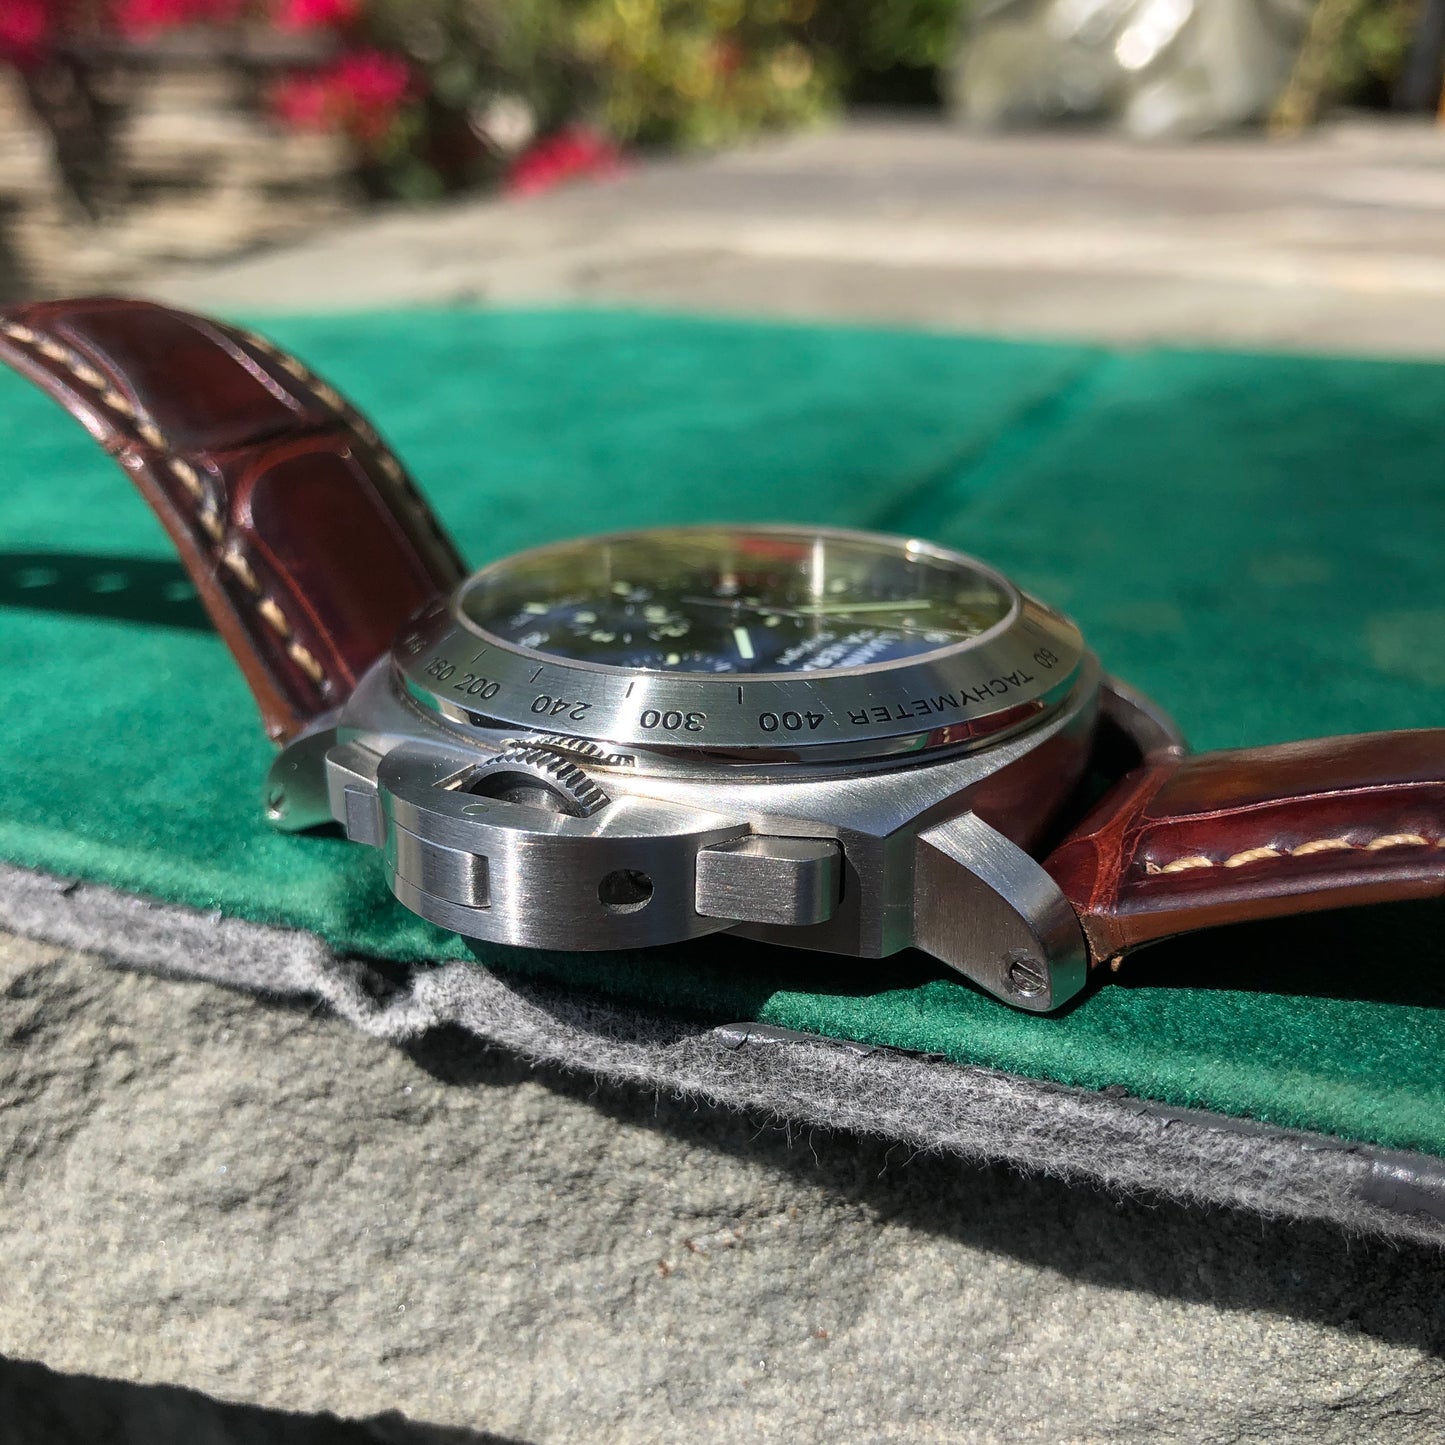 Panerai Luminor Daylight PAM 250 Chronograph Automatic Stainless Steel 44mm Wristwatch - Hashtag Watch Company